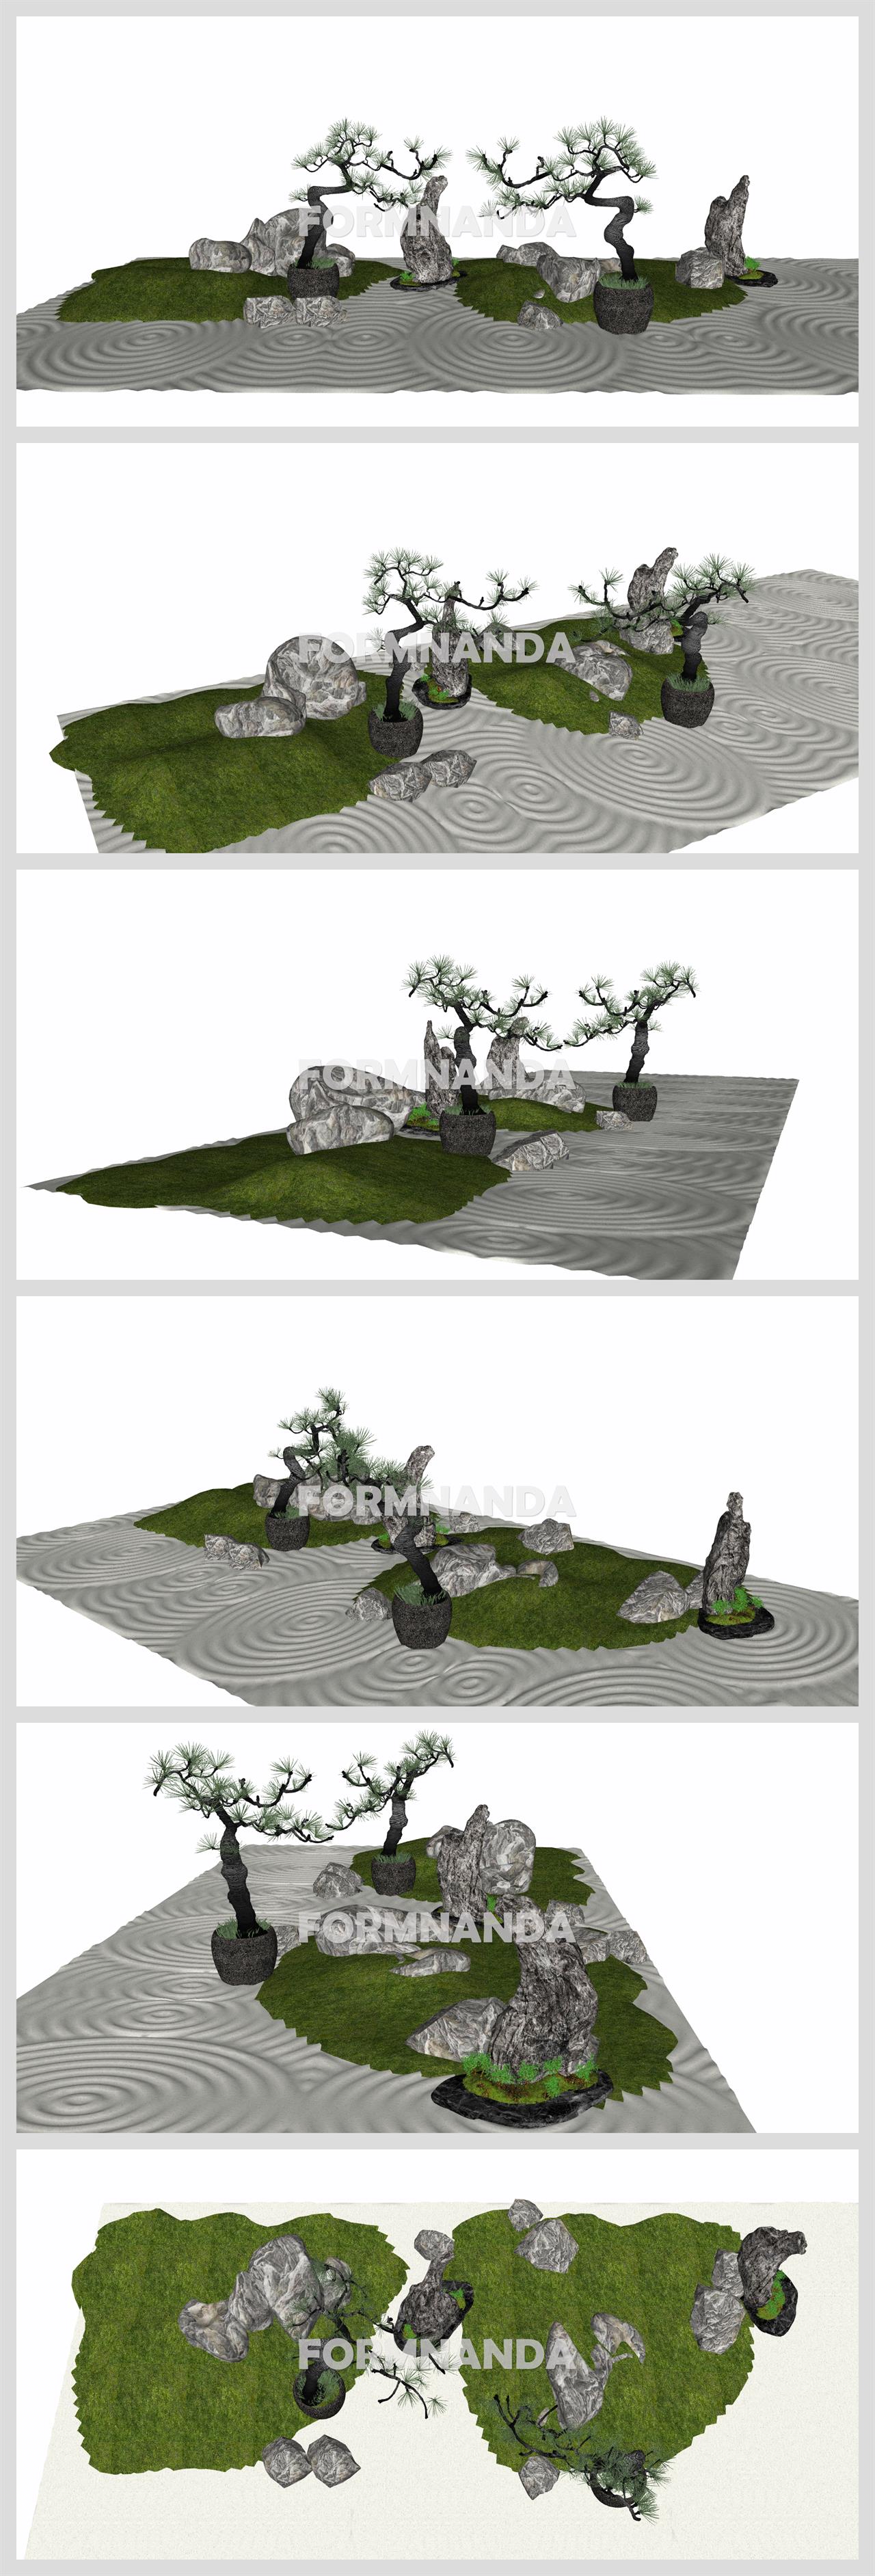 간편한 정원조경 환경 Sketchup 모델 만들기 상세보기